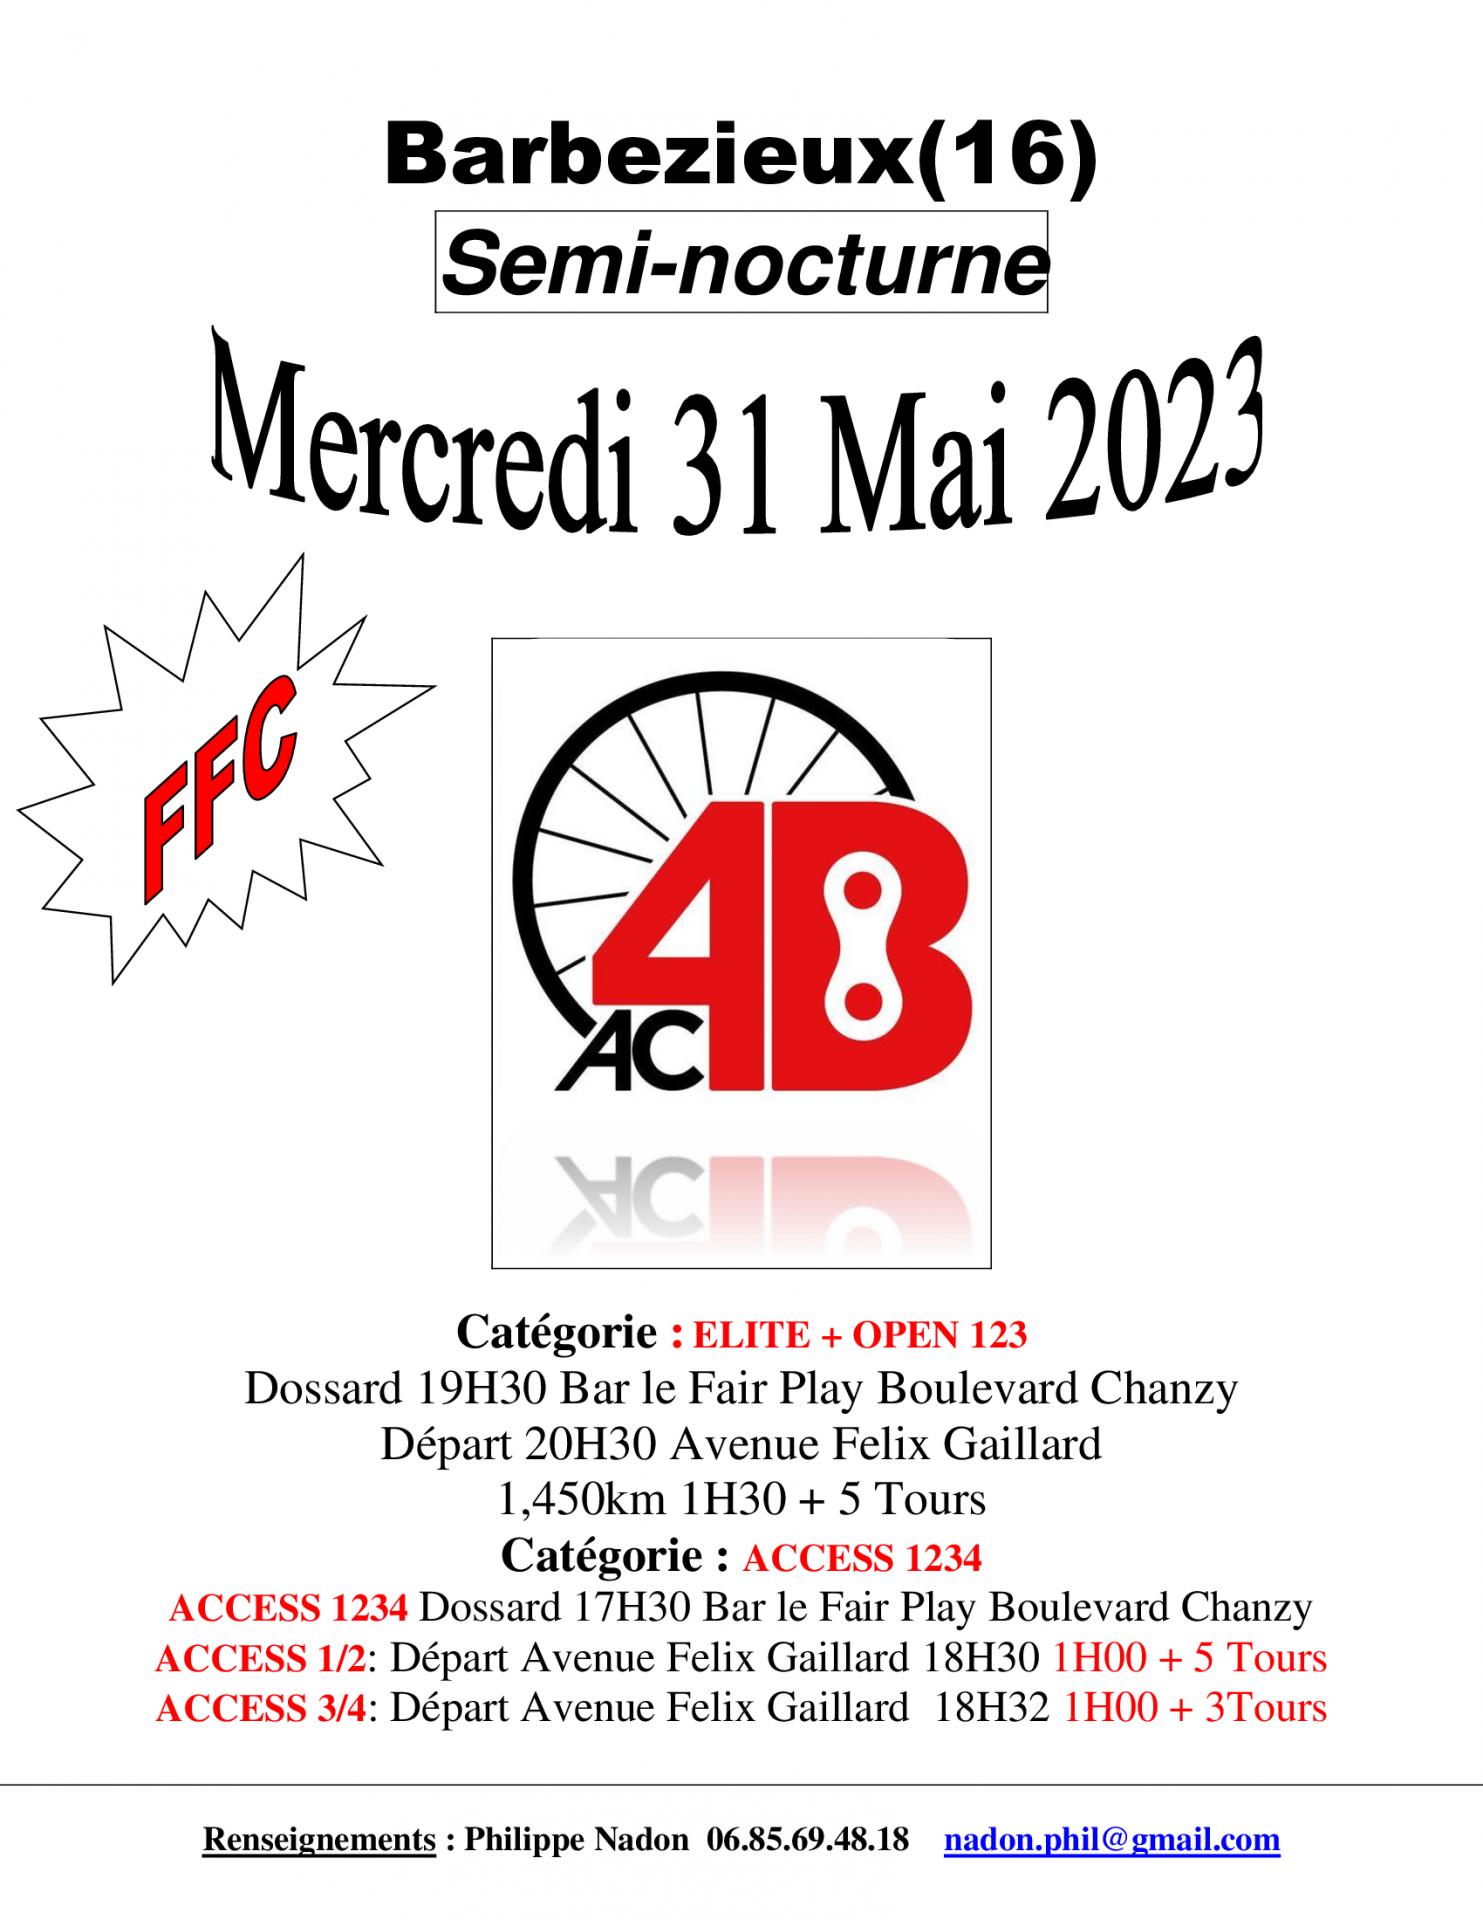 L’AC4B Organise à Barbezieux(16) Semi-nocturne Catégorie : ELITE + OPEN 123 + Catégorie : ACCESS 1234